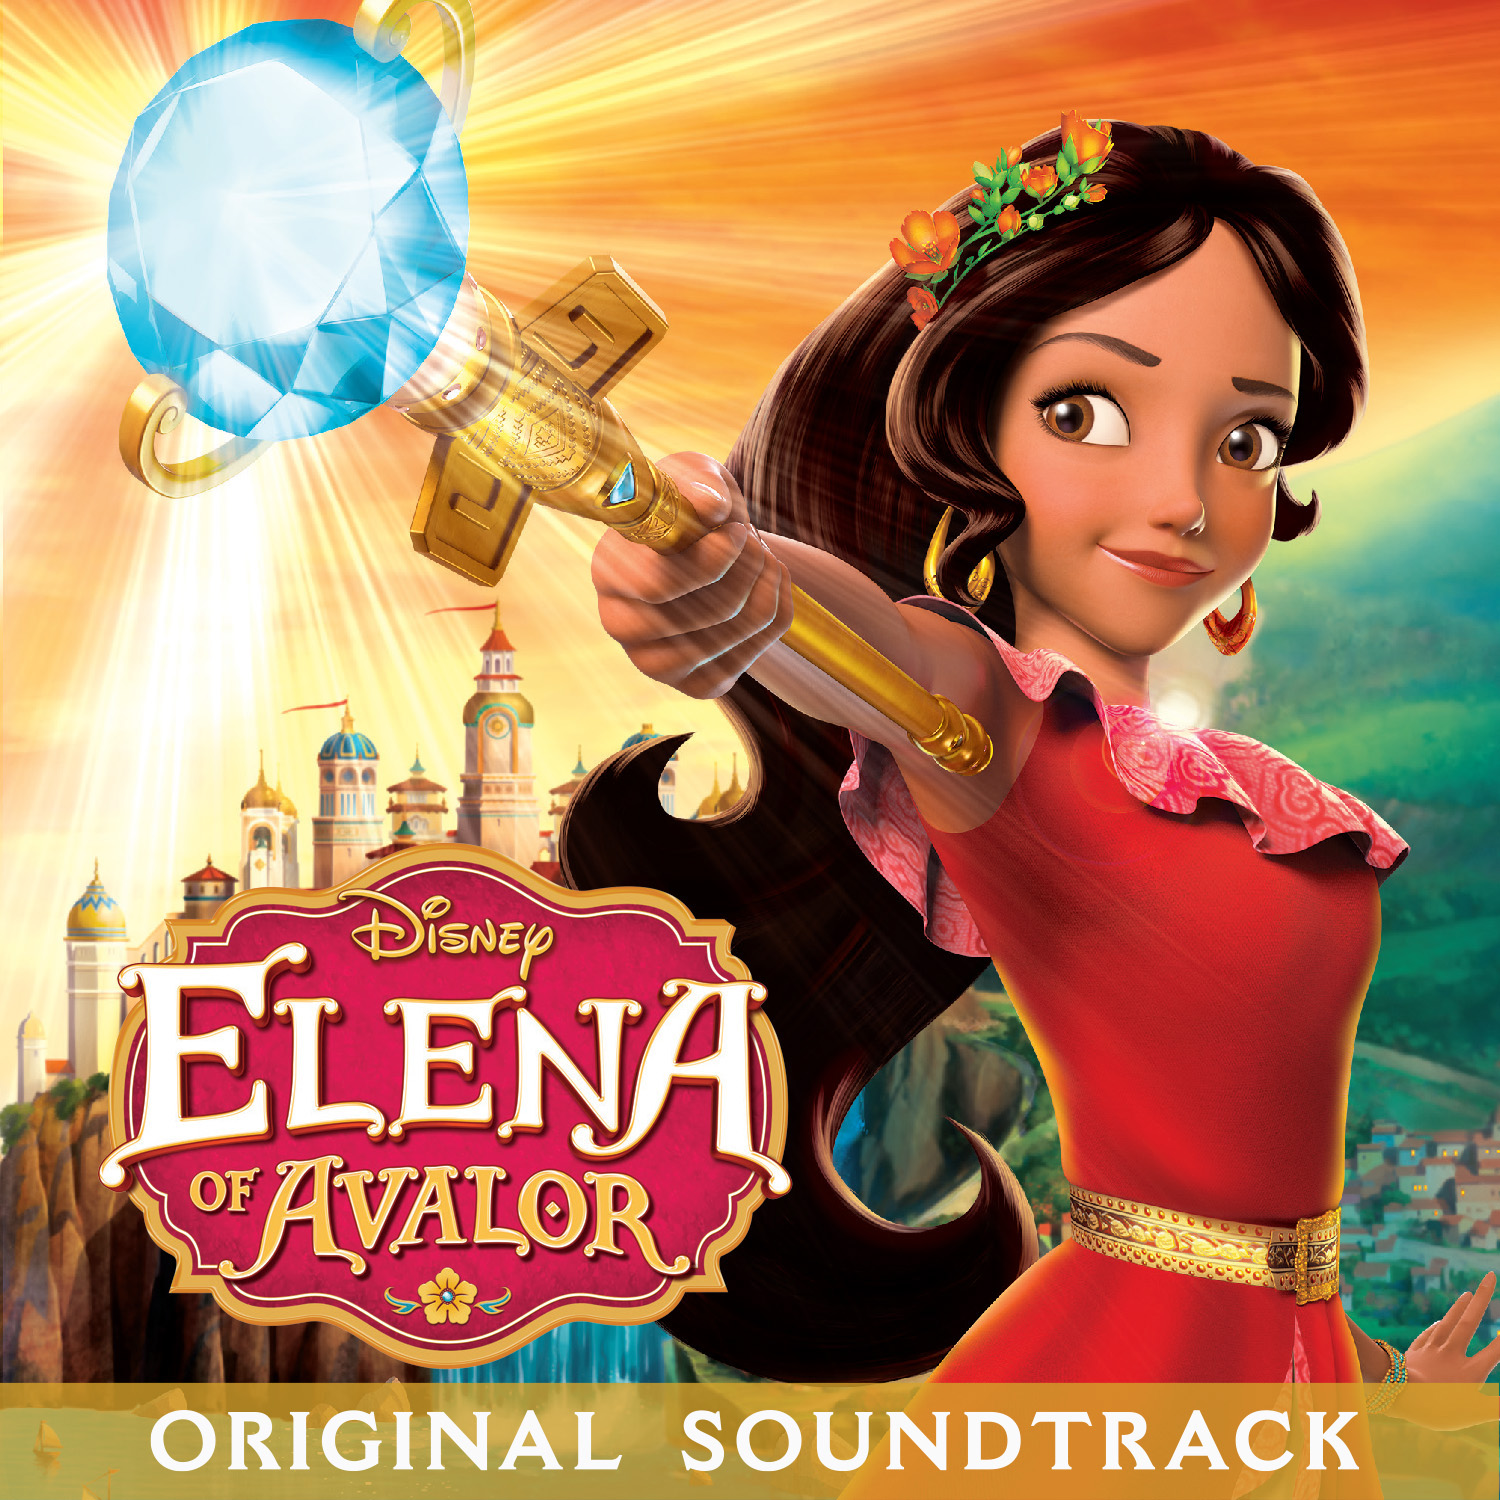 Soundtrack Review: Elena of Avalor